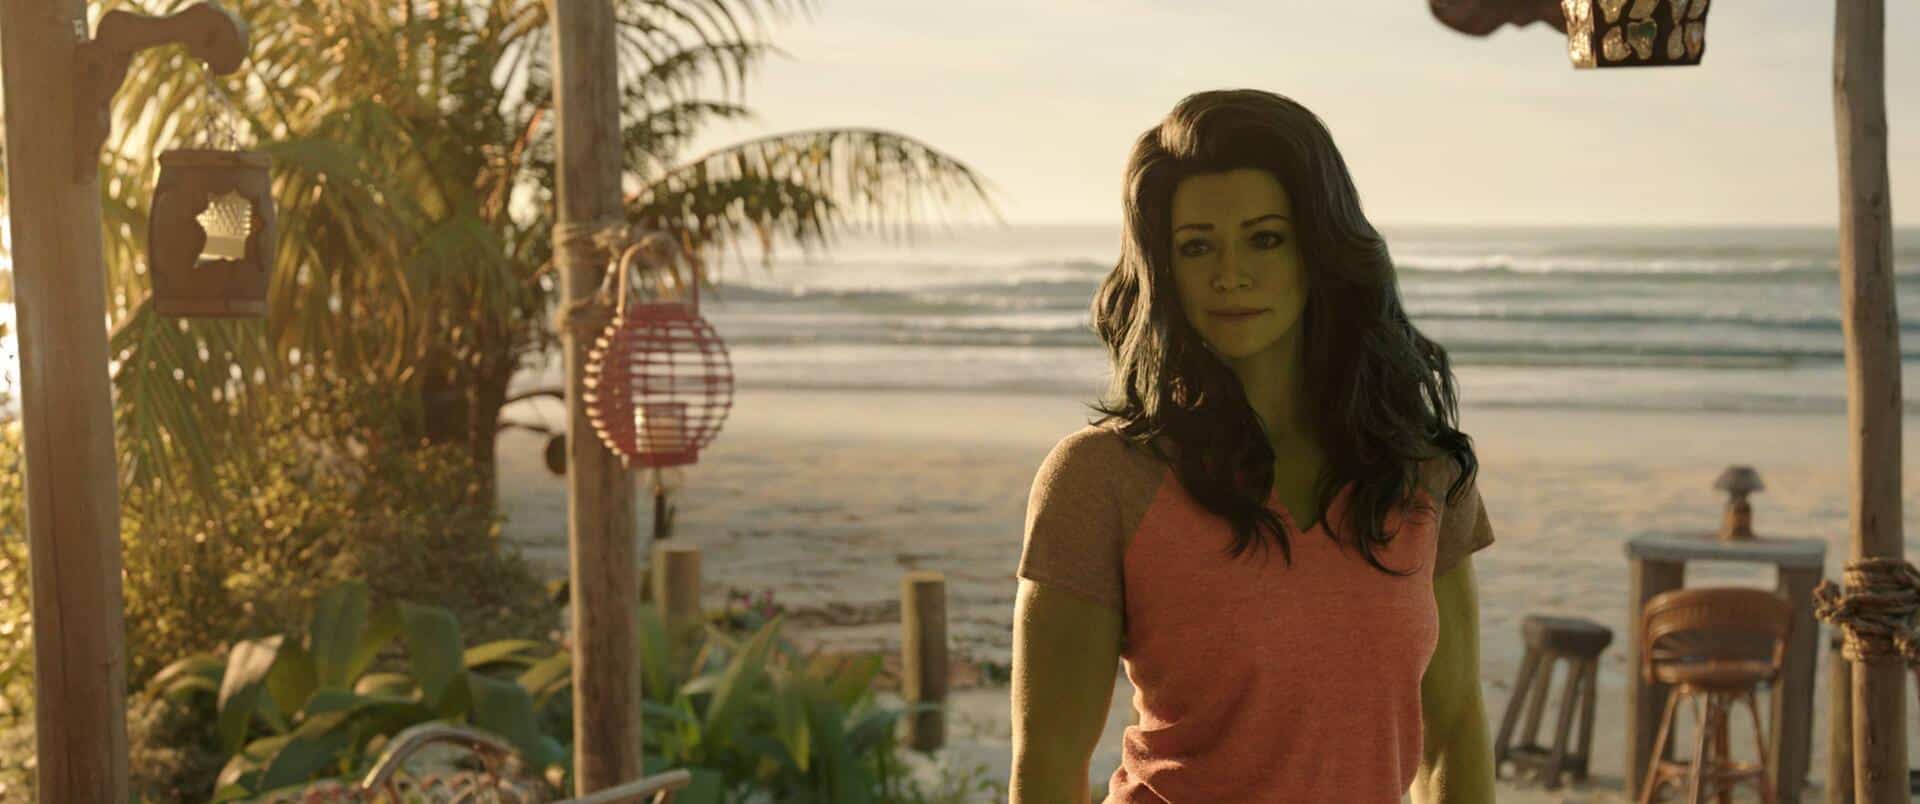 She-Hulk: Attorney at Law episodio 1 revisión estreno MCU Marvel Cinematic Universe Jen Walters espectáculo crisis de identidad obligaciones narrativas en conflicto Tatiana Maslany Tatiana Maslany